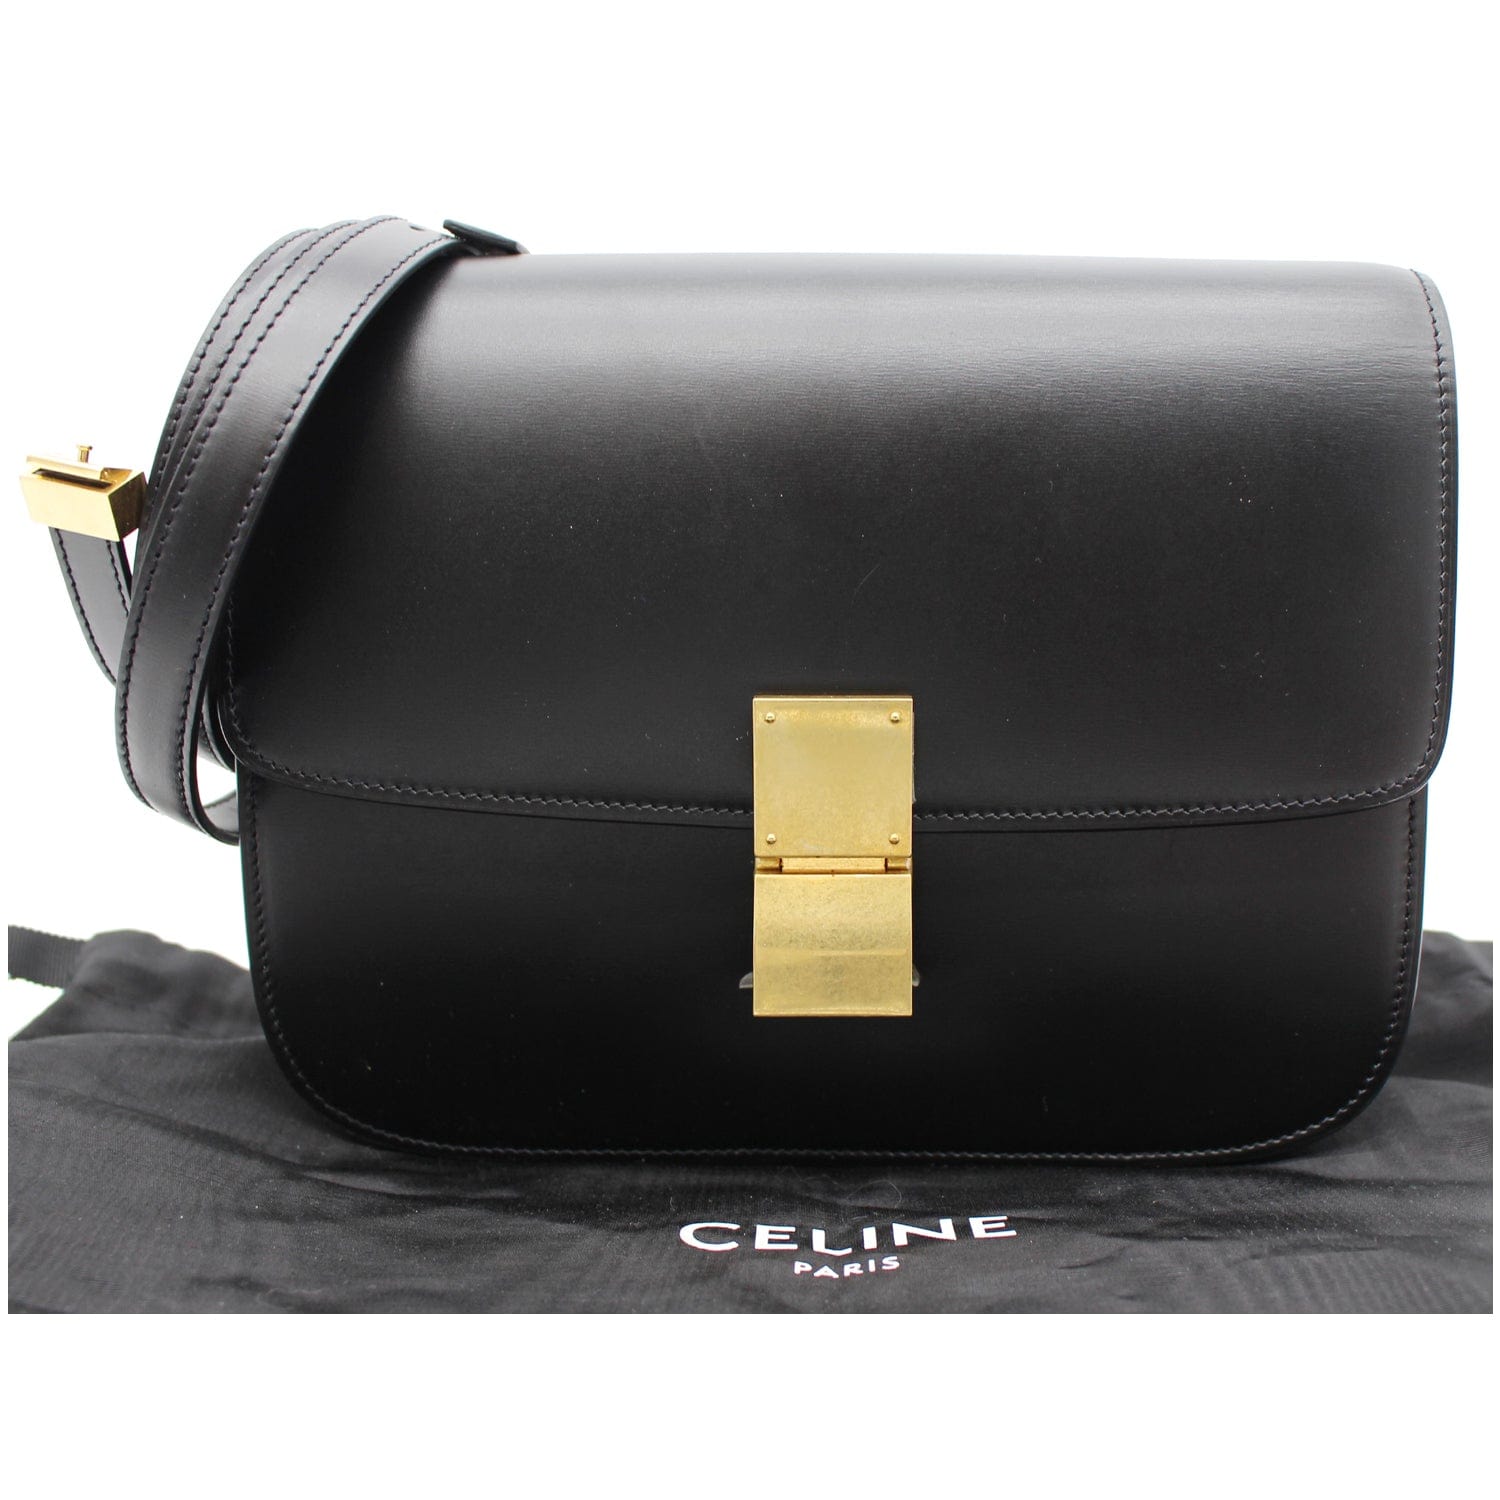 Celine Box Bag in Medium e  Bags, Celine box bag, Celine box